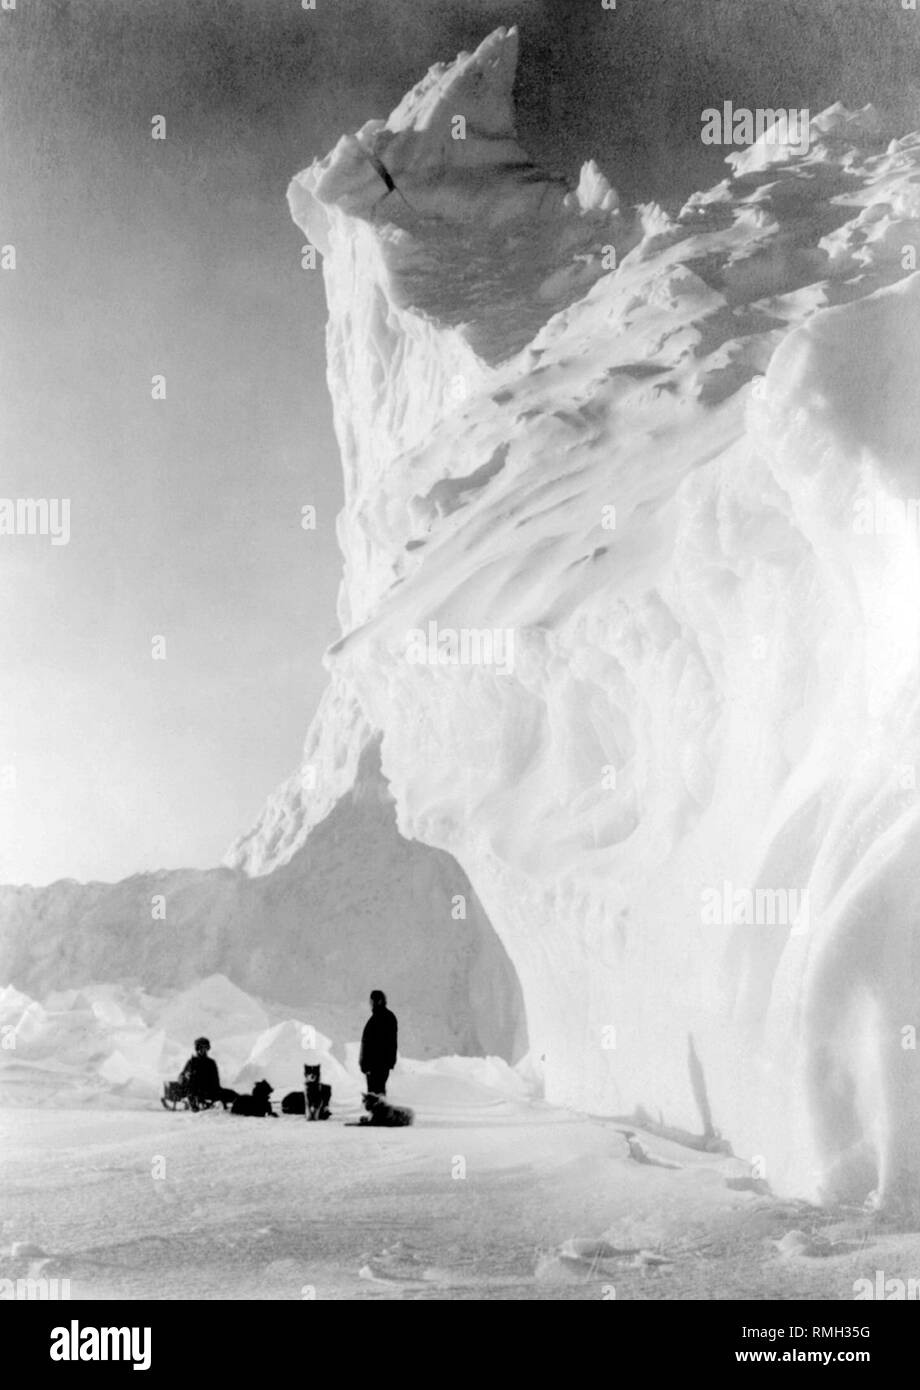 L'équipe de chien de deux hommes et les chiens se reposant près d'un iceberg sur l'expédition Terra Nova au cours de l'expédition Antarctique Britannique en Antarctique Photo prise 1910 Banque D'Images